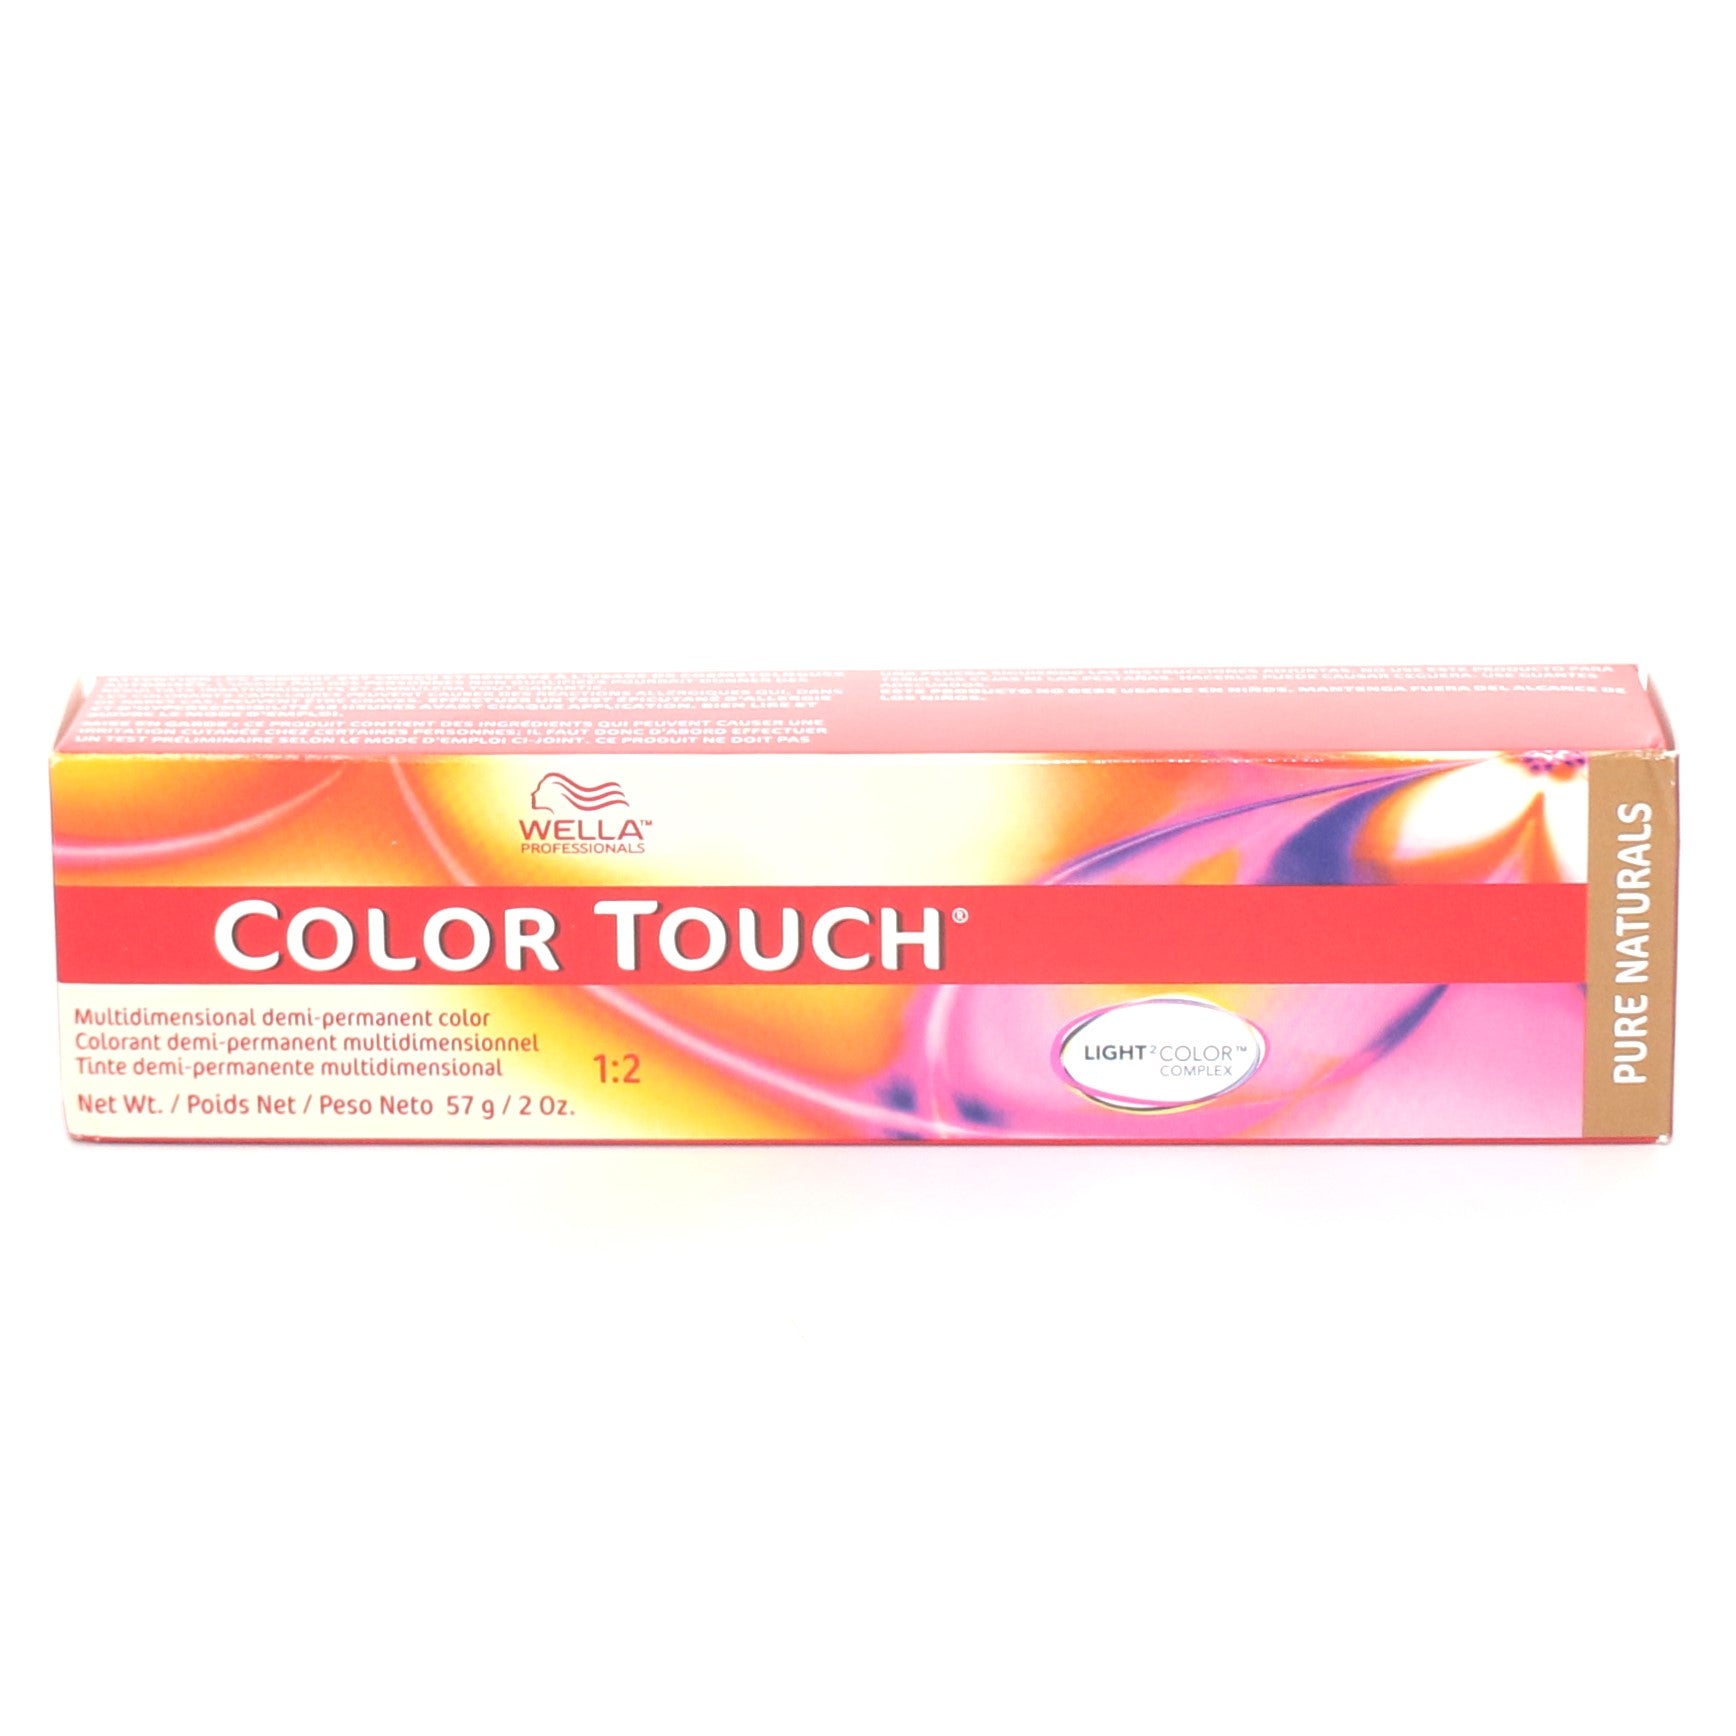 Wella Color Touch Multidimensional Demi-Permanent Color Pure Naturals 2 oz